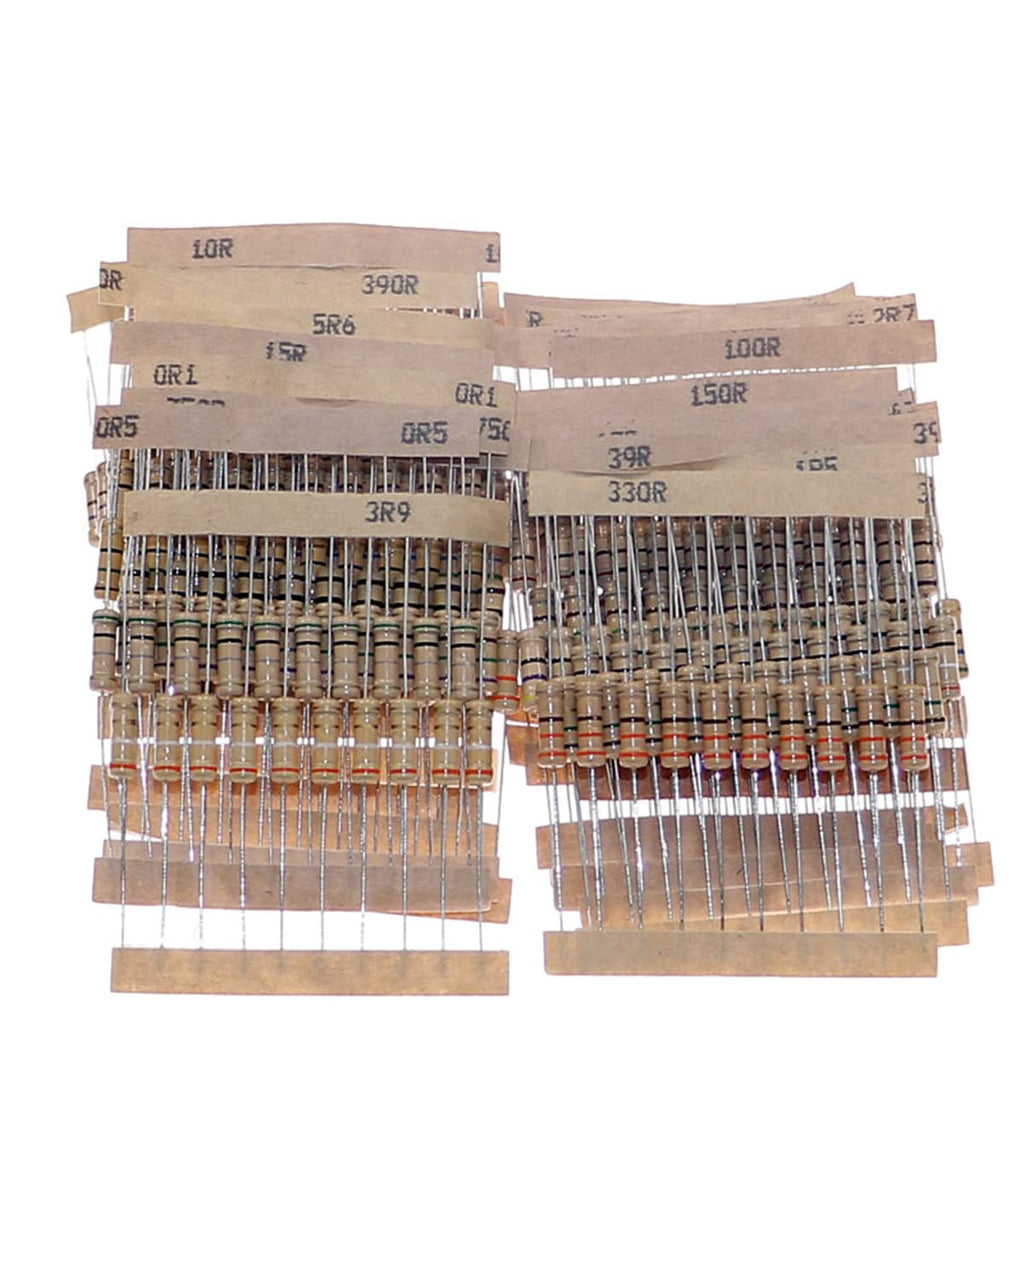 Cermant 300pcs 30 Values Resistor Kit 0.1ohm-750ohm with 5% 1W Carbon Film Resistors Assortment for DIY Projects and Experiments 300 pcs Carbon Film Resistor